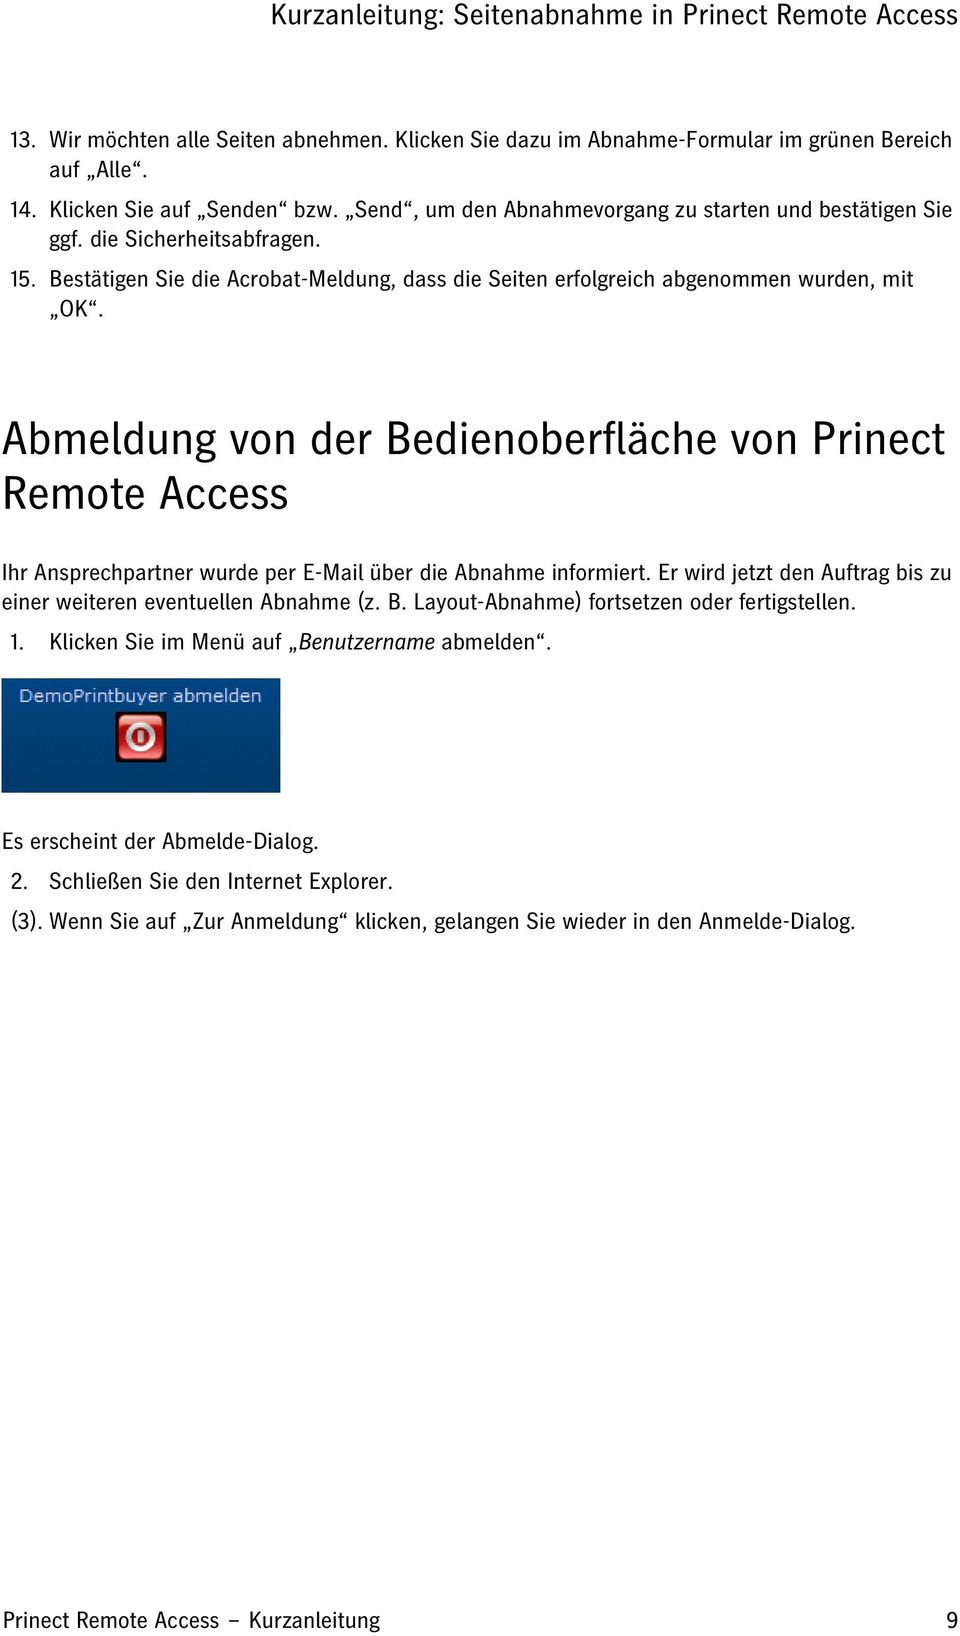 Abmeldung von der Bedienoberfläche von Prinect Remote Access Ihr Ansprechpartner wurde per E-Mail über die Abnahme informiert. Er wird jetzt den Auftrag bis zu einer weiteren eventuellen Abnahme (z.